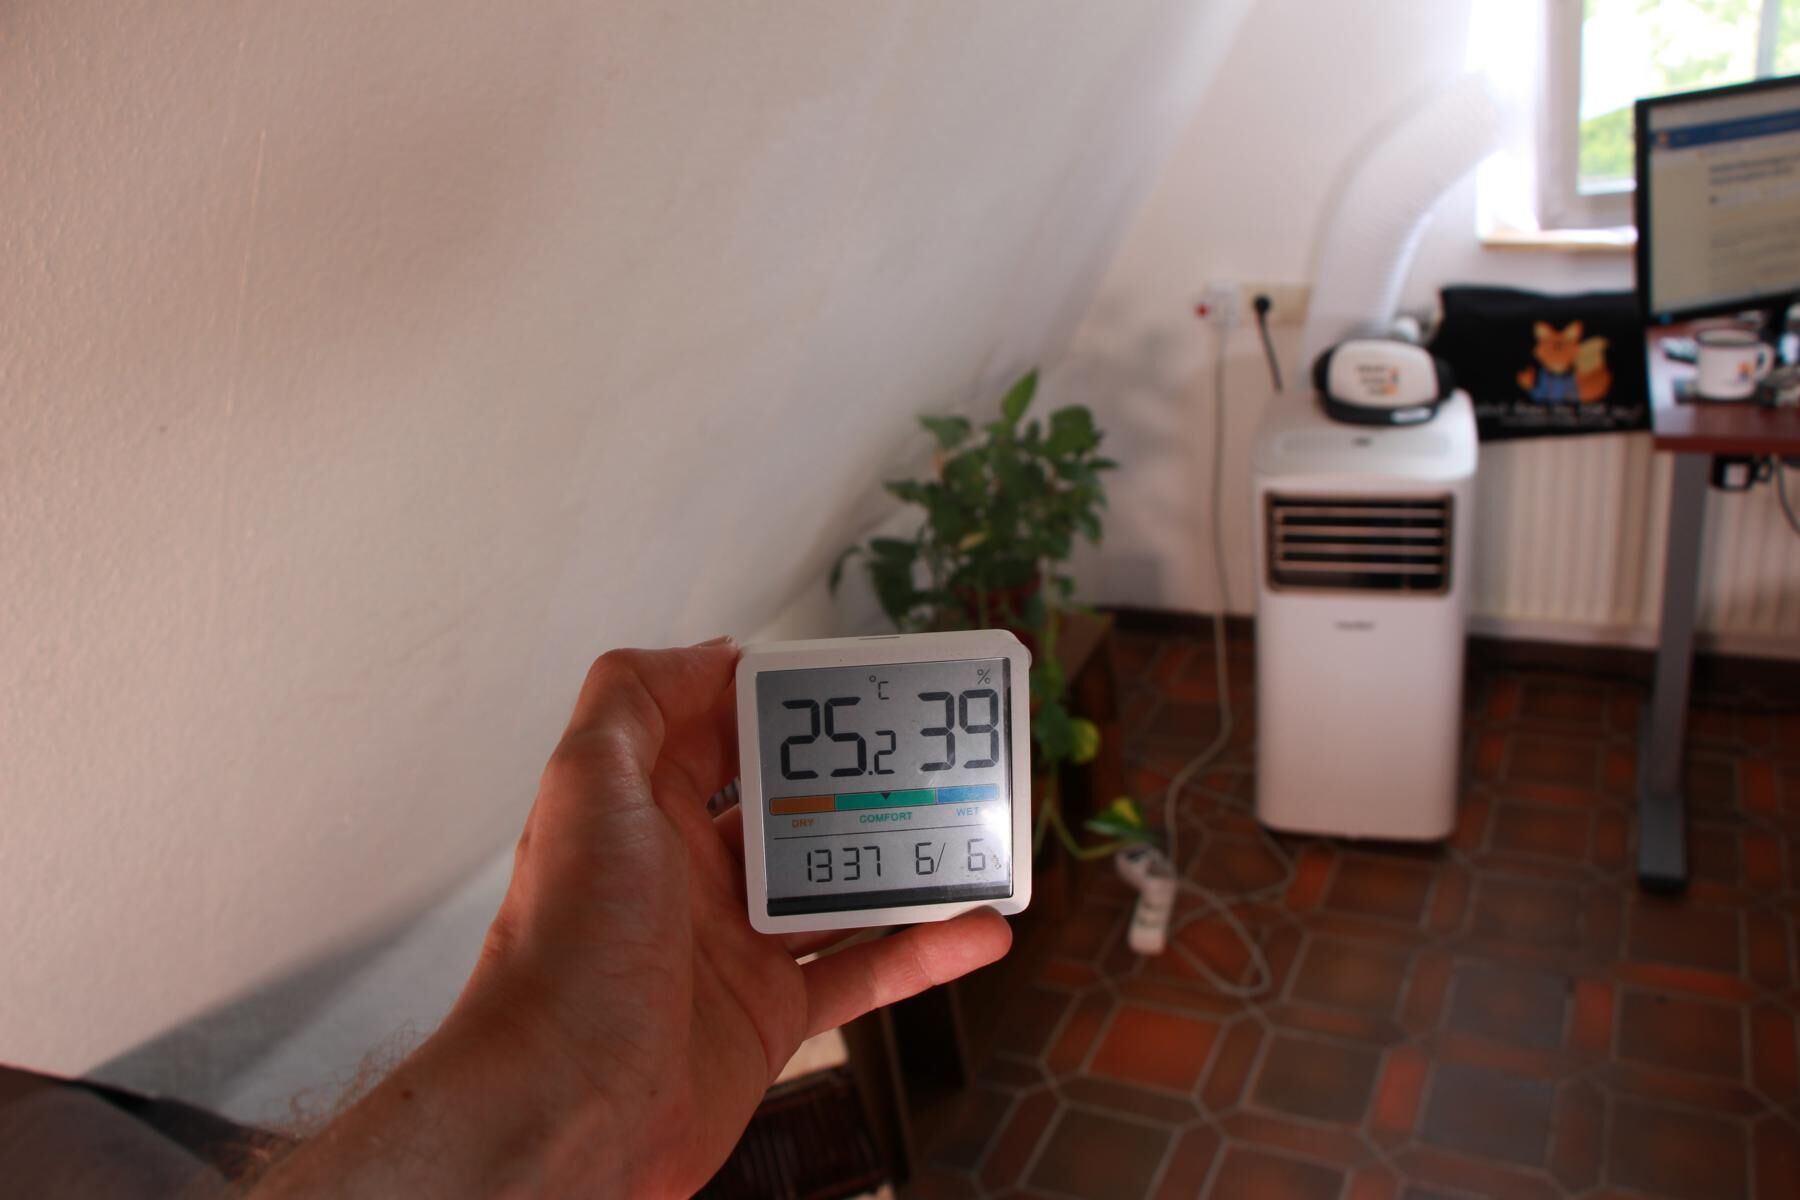 Ein Thermostat wird zum anfang des Kühltests in einigen Metern Abstand zur mobilen Klimaanlage gehalten und zeigt 25,2 Grad Celsius Zimmertemperatur an.